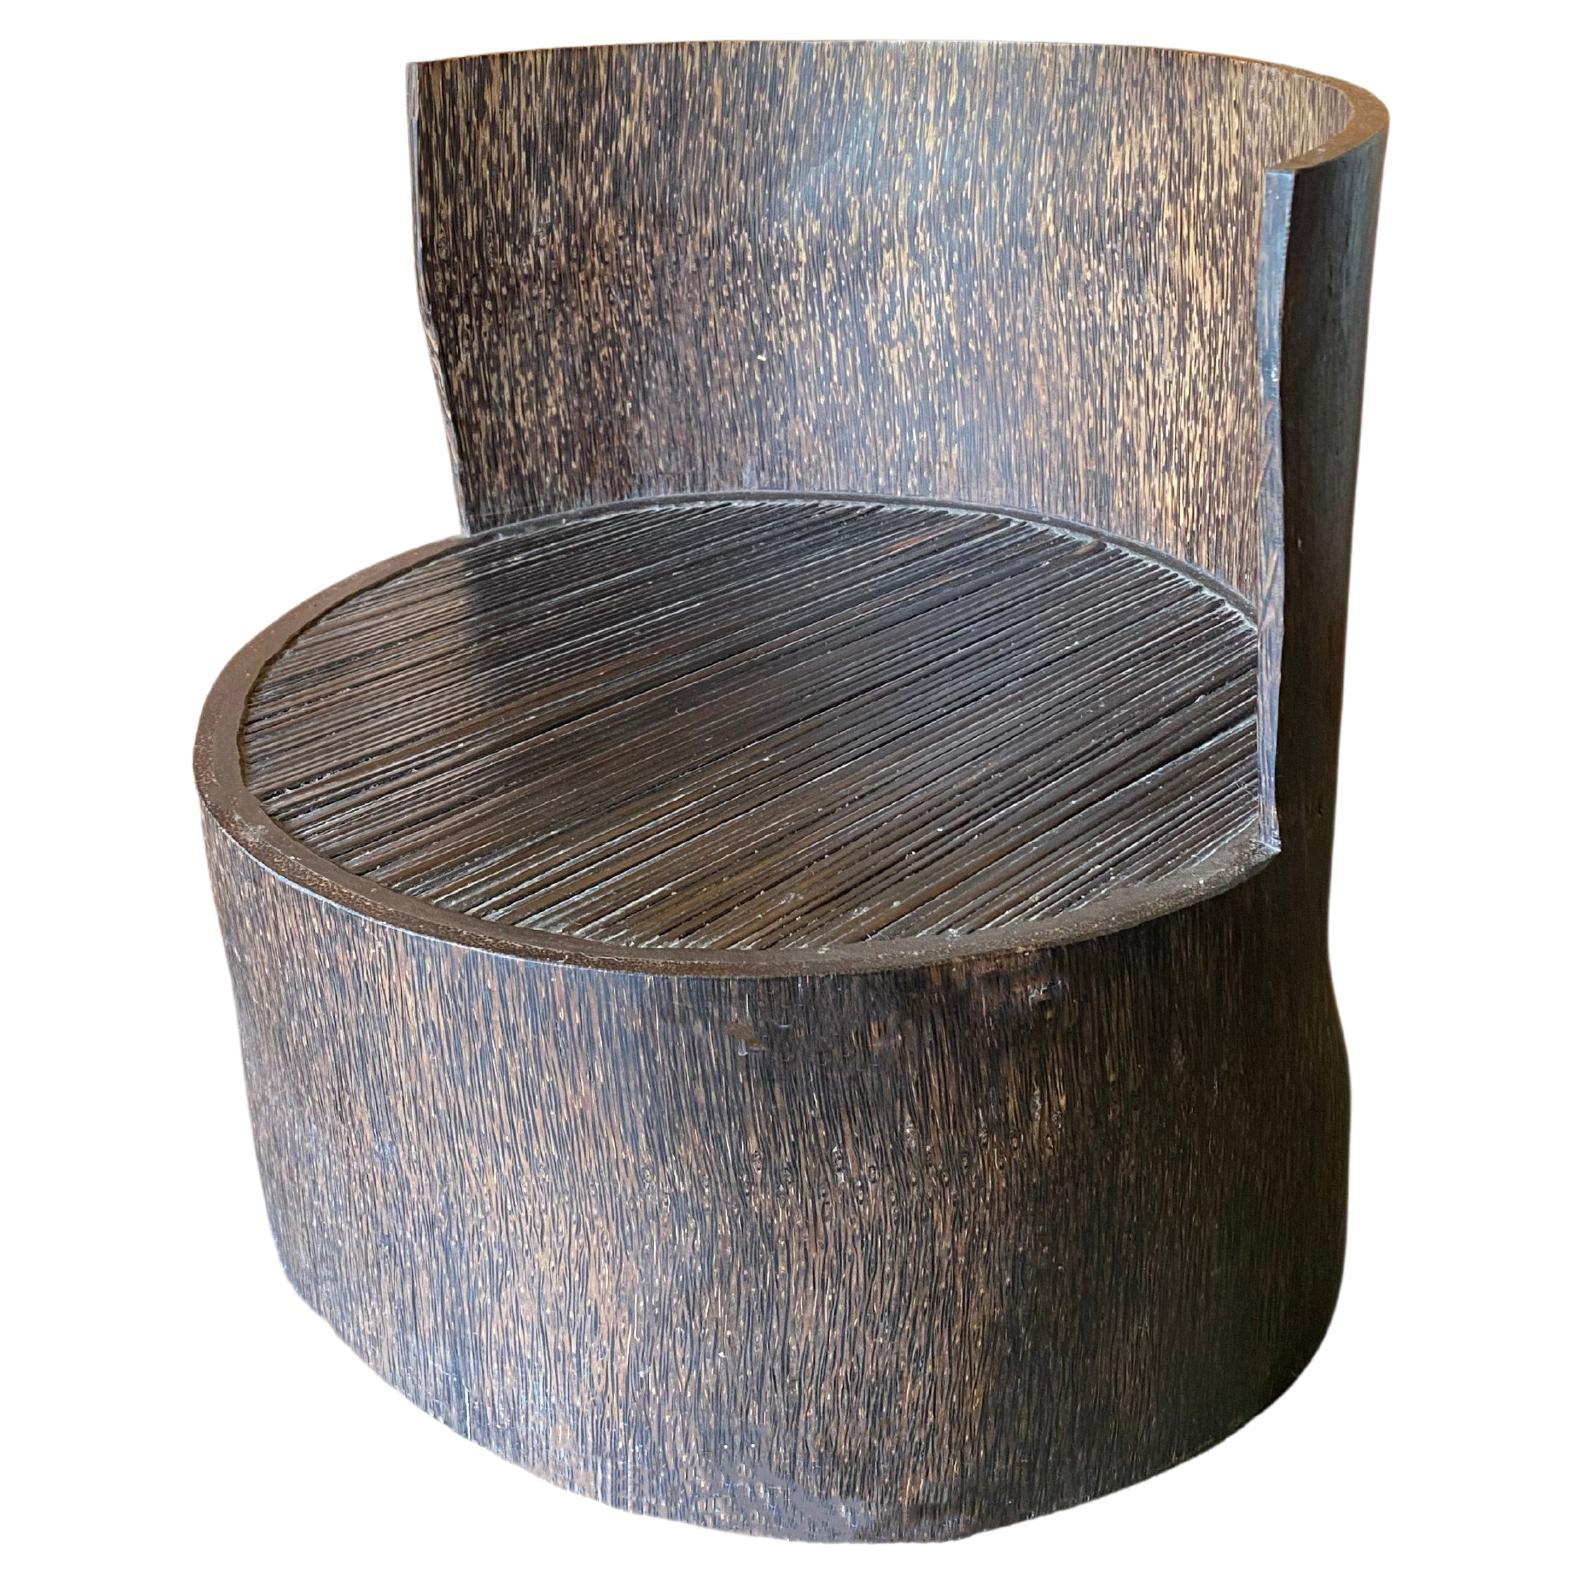 Skulpturaler niedriger Stuhl mit Rückenlehne, geschnitzt aus einem Palmenbaumstamm